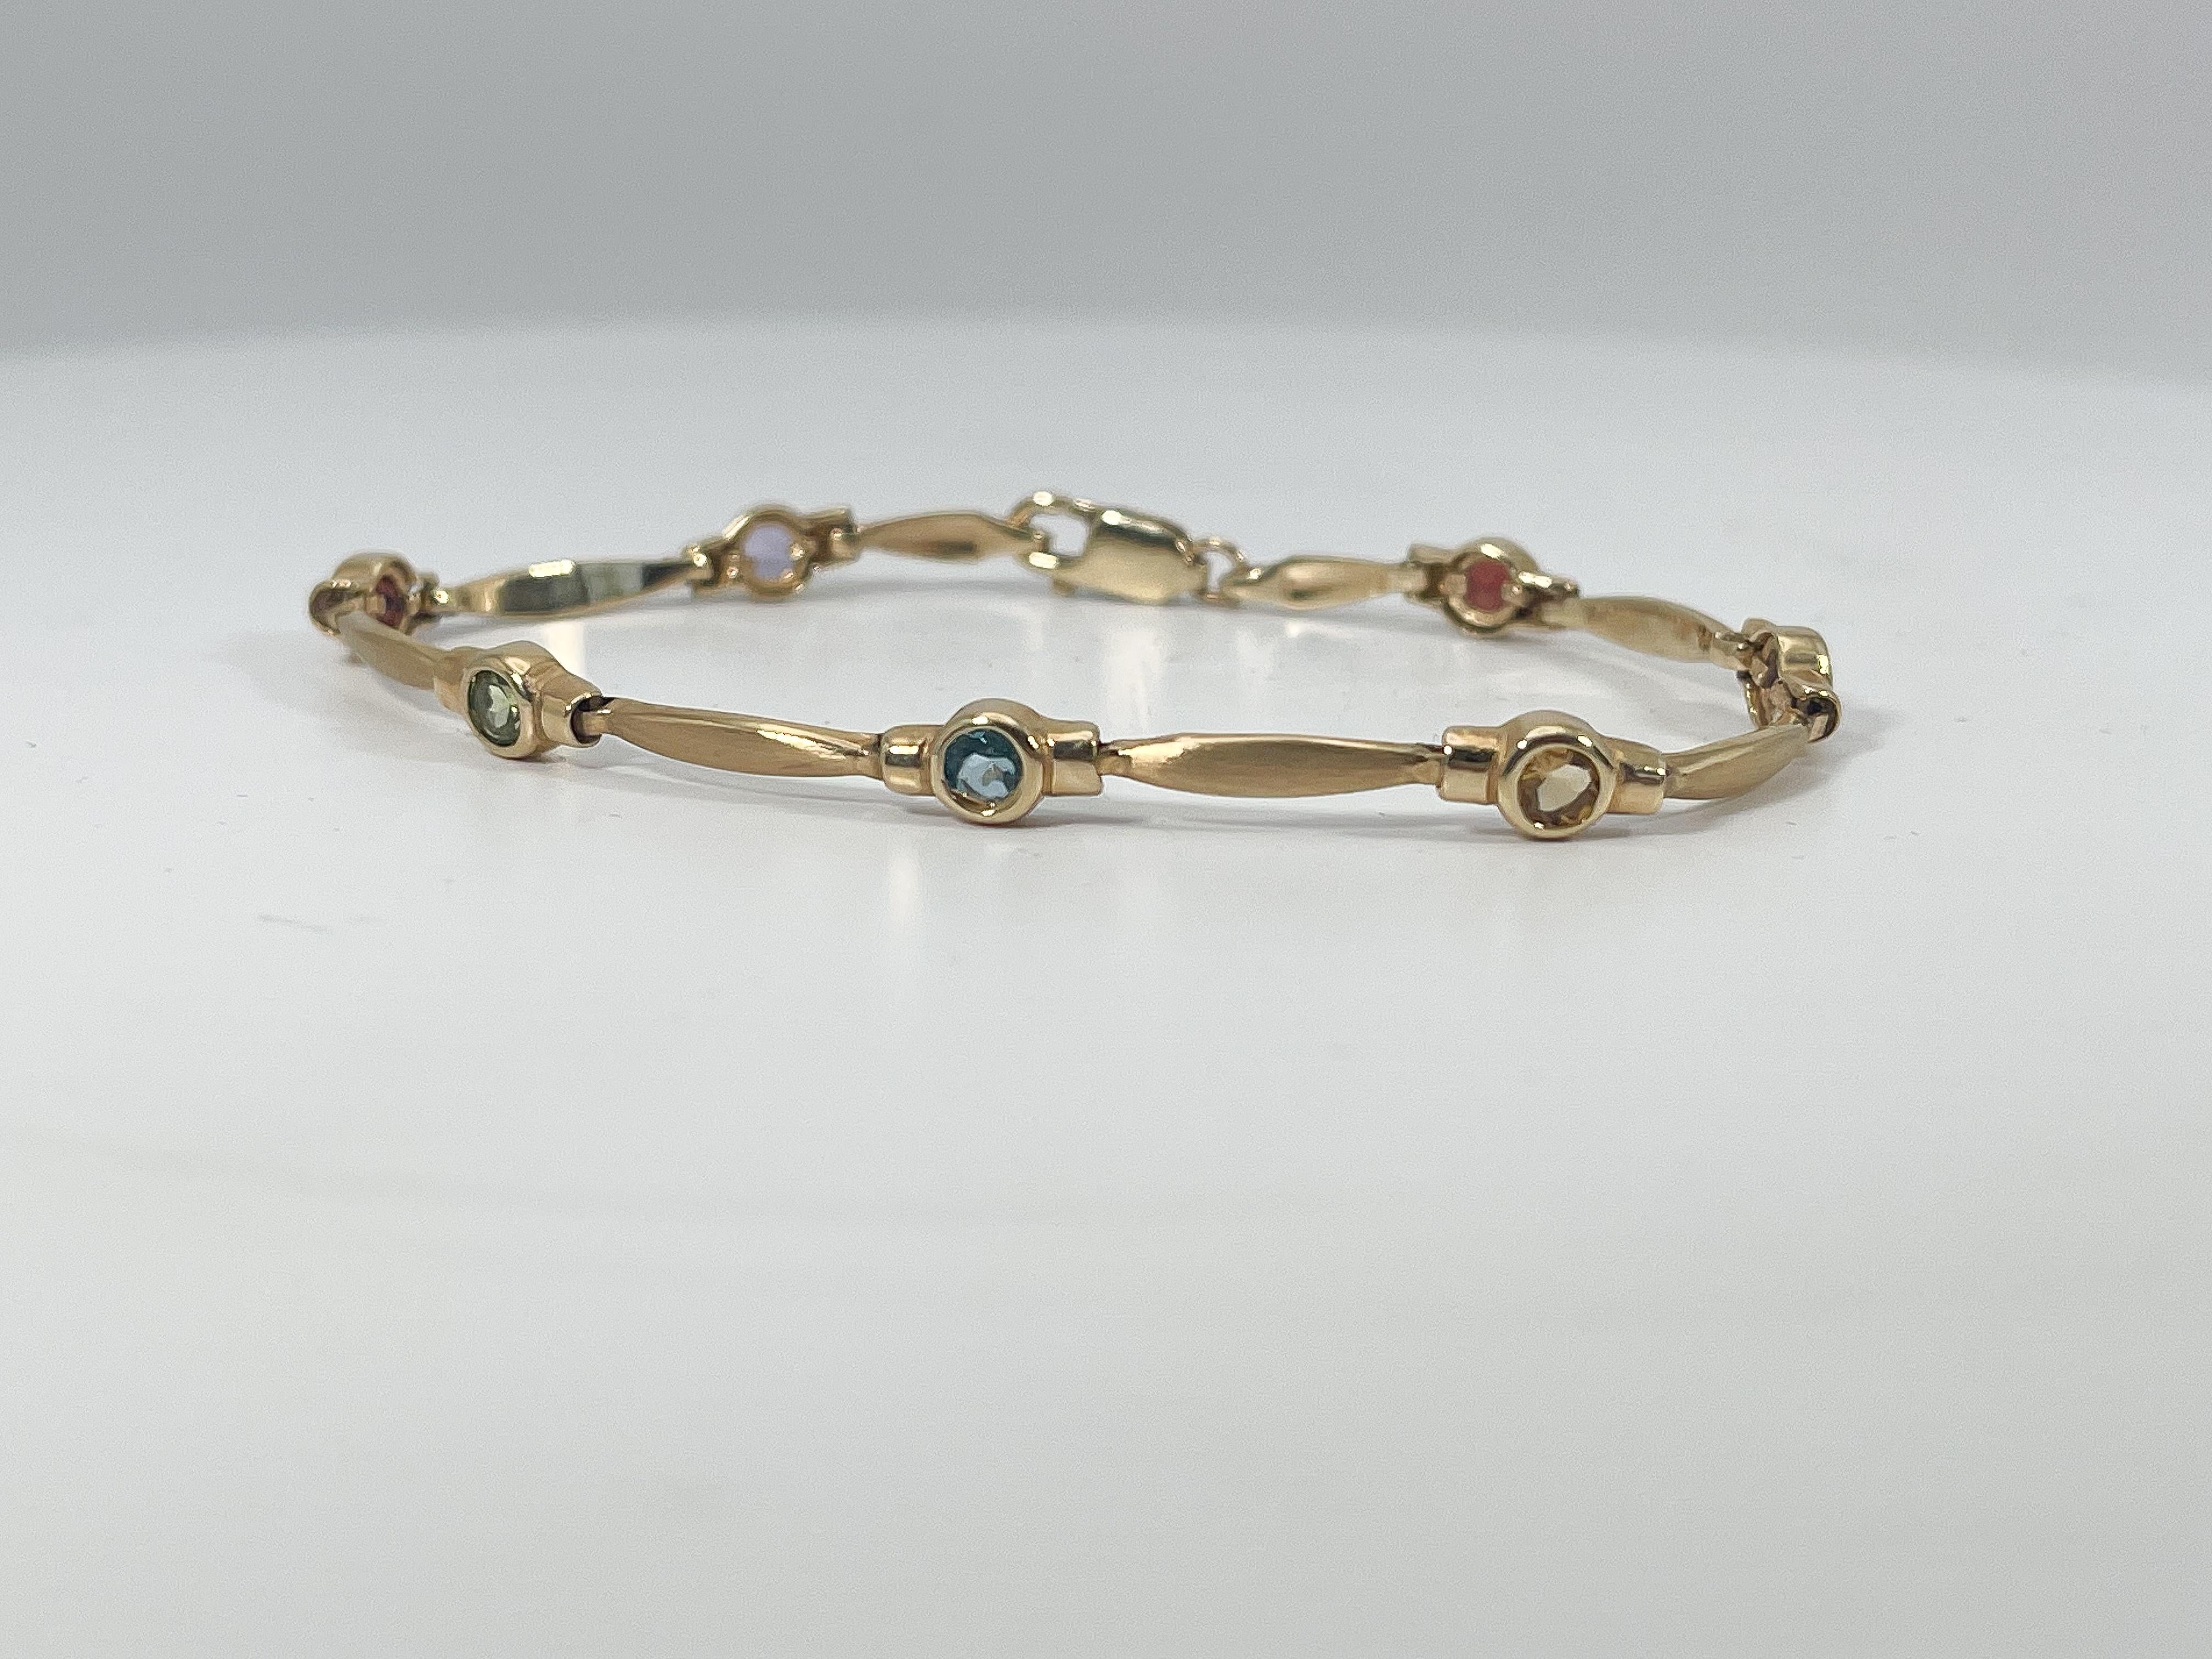 Bracelet en or jaune 14k avec des citrines colorées. Ce bracelet a un fermoir lobster, 7 pierres, violet, rouge, vert, bleu et jaune. La largeur du bracelet est de 5 mm, la longueur de 7 pouces et le poids total de 8,12 grammes.